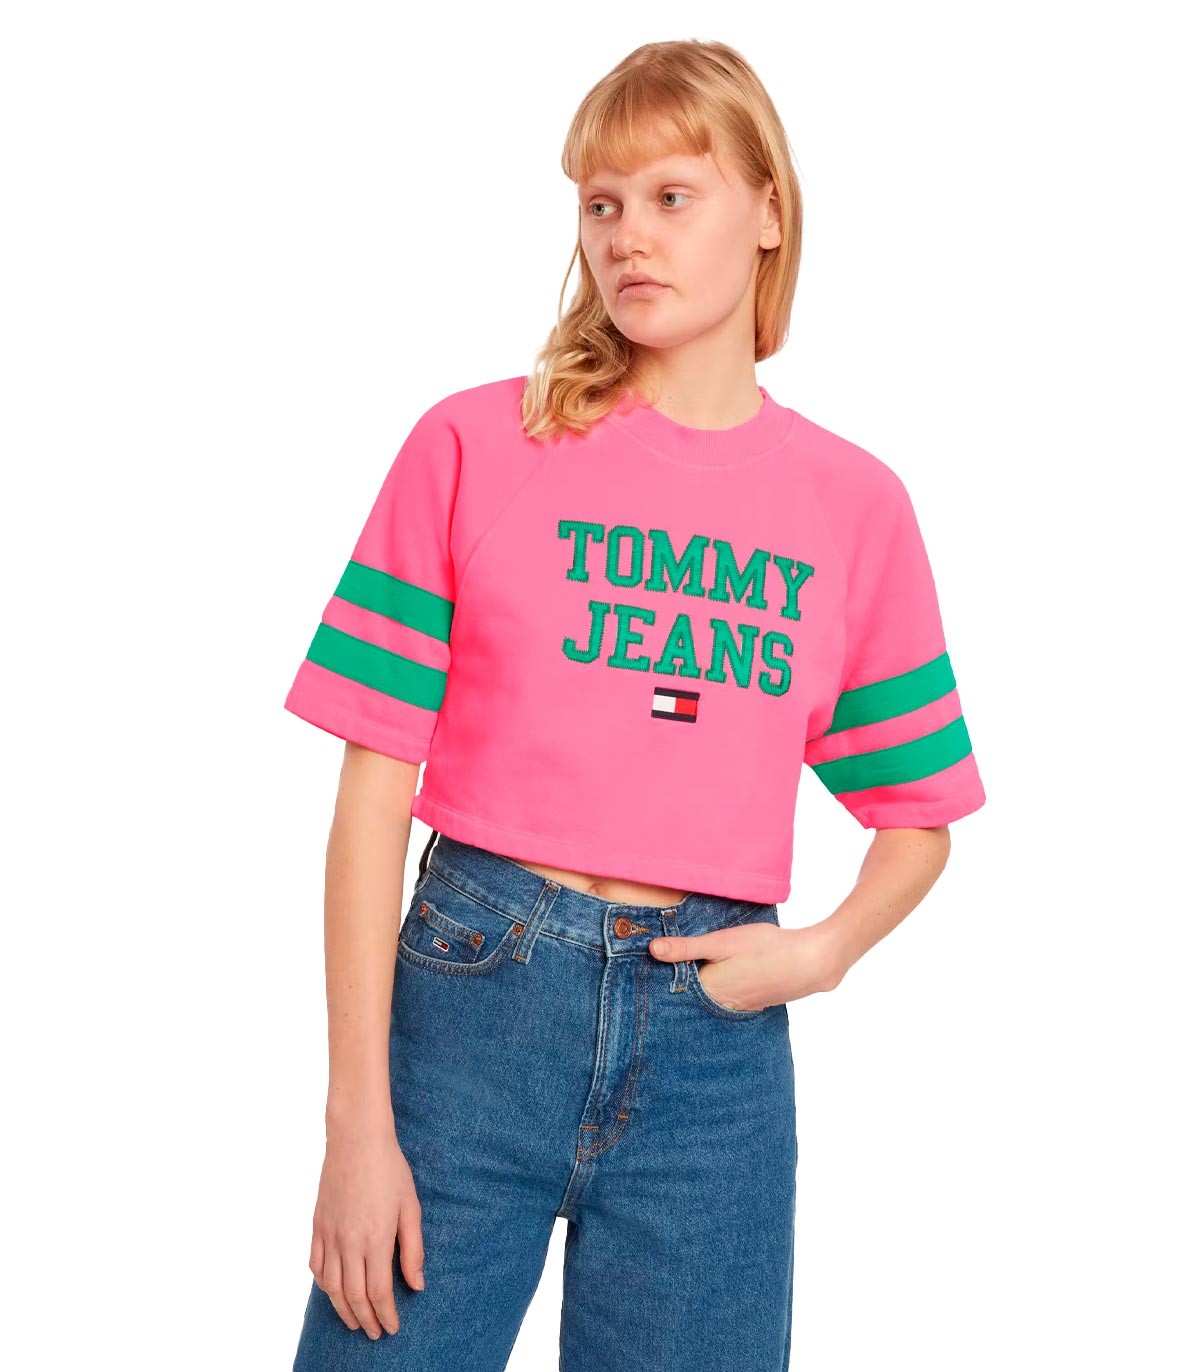 Tommy Jeans - Camiseta con Estampado - ROSA